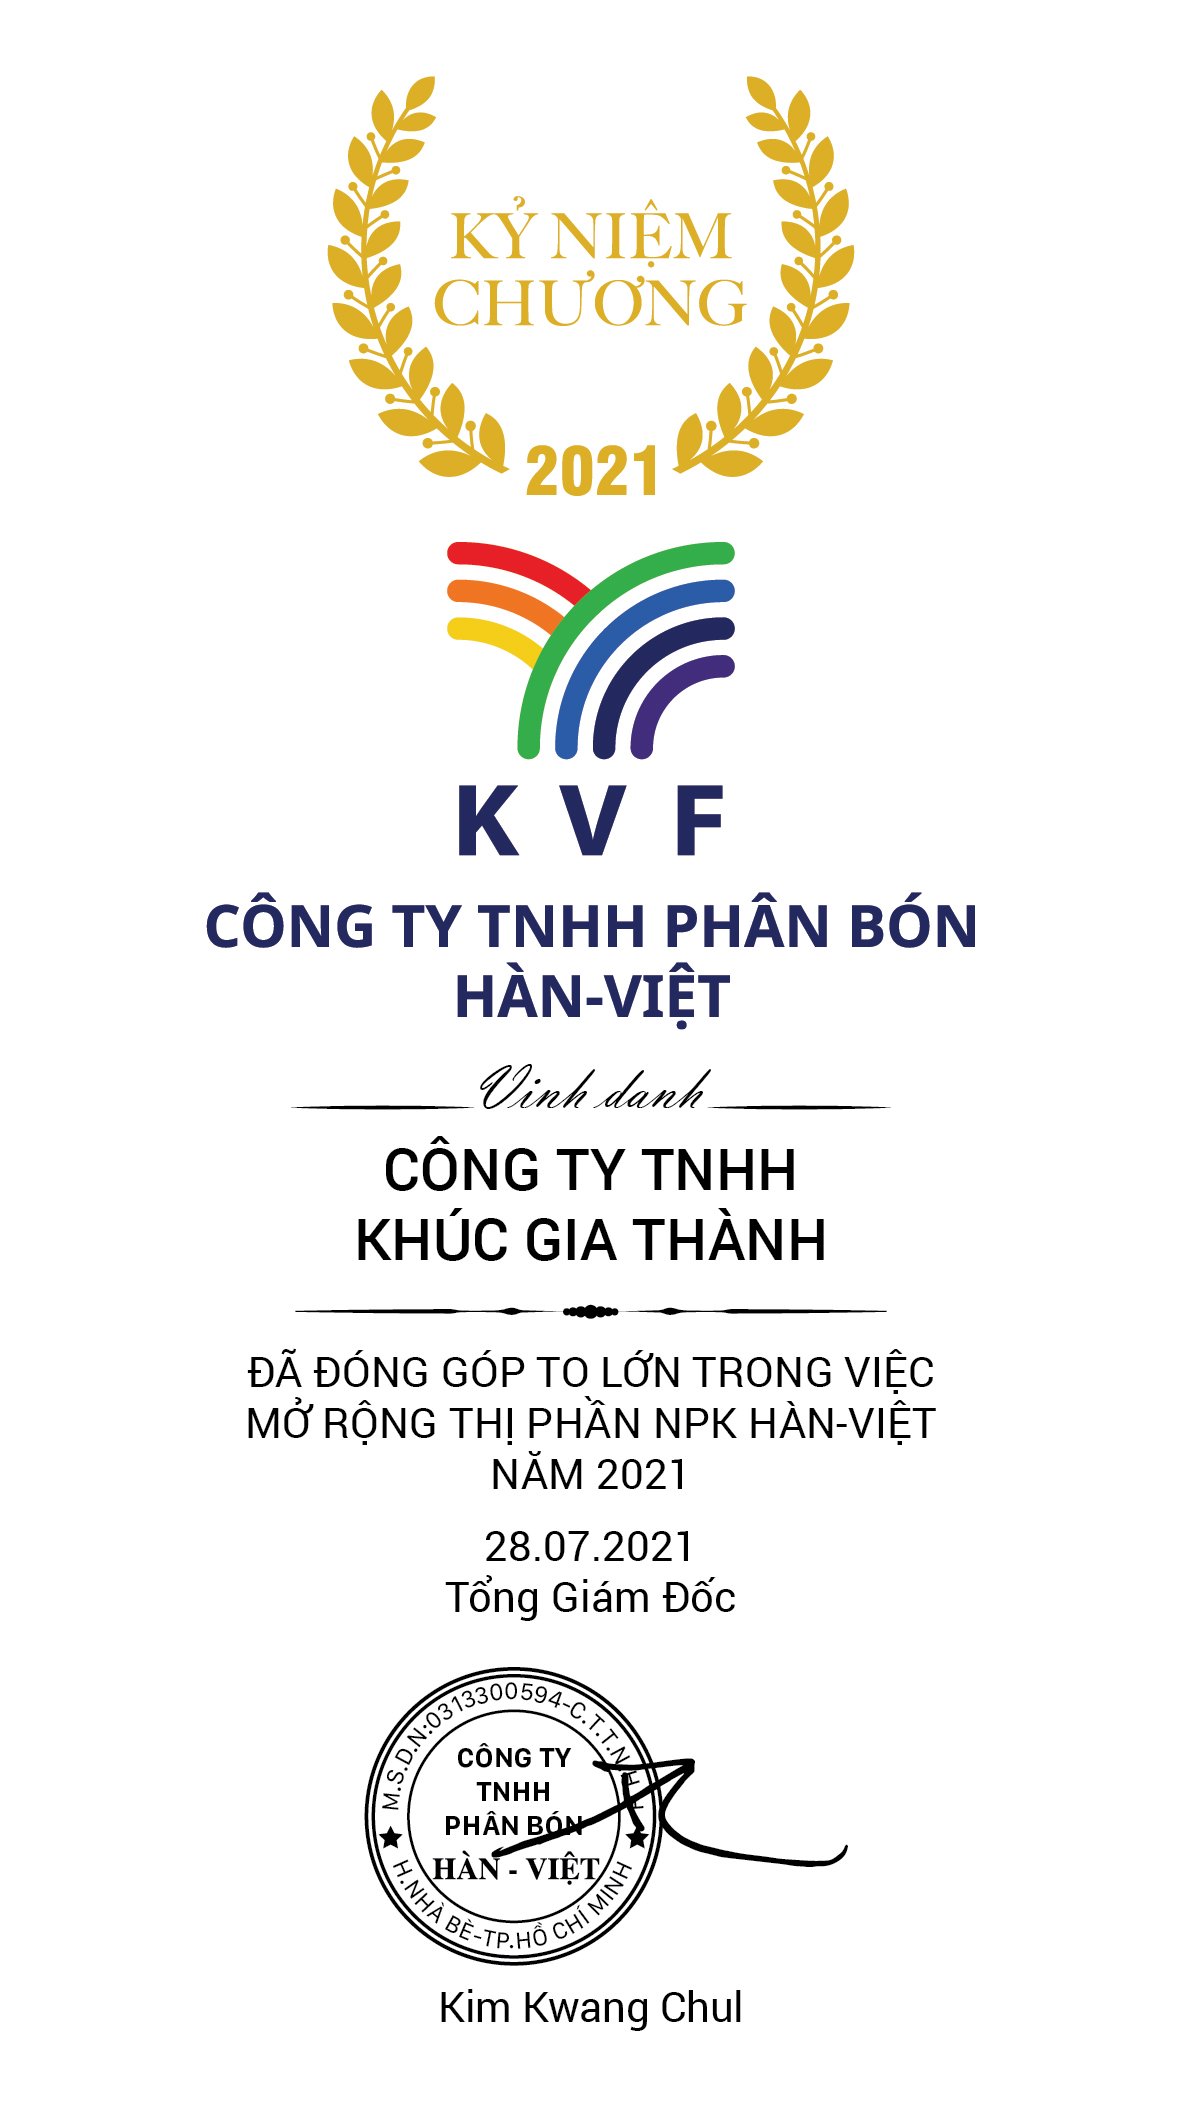  game bài đổi thưởng nncc 




 xin gửi lời cảm ơn và chúc mừng NPP Công ty TNHH Khúc Gia Thành (Lâm Đồng) đã vượt mốc doanh số 3.000 tấn NPK Hàn-Việt lũy kế đến 28/07/2021